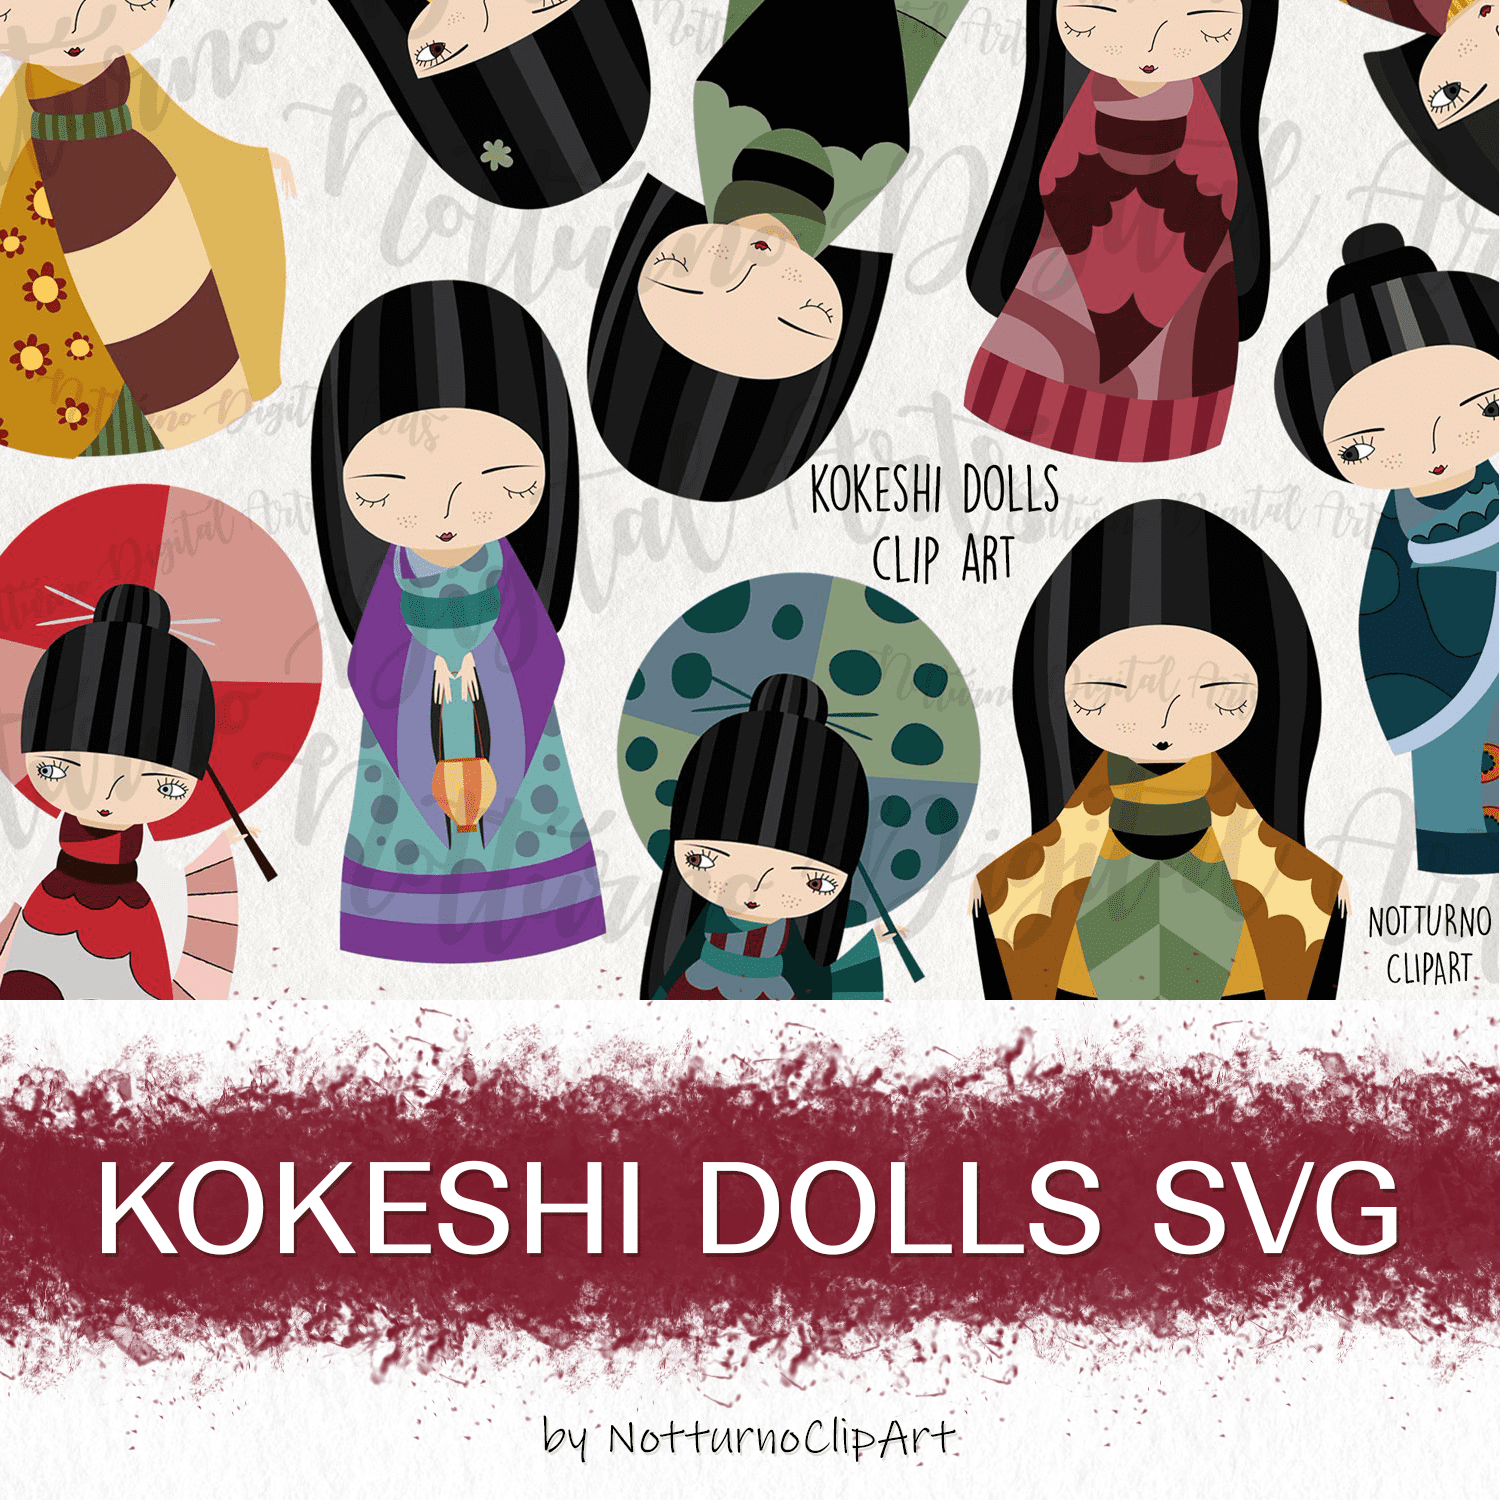 Kokeshi Dolls SVG - main image preview.